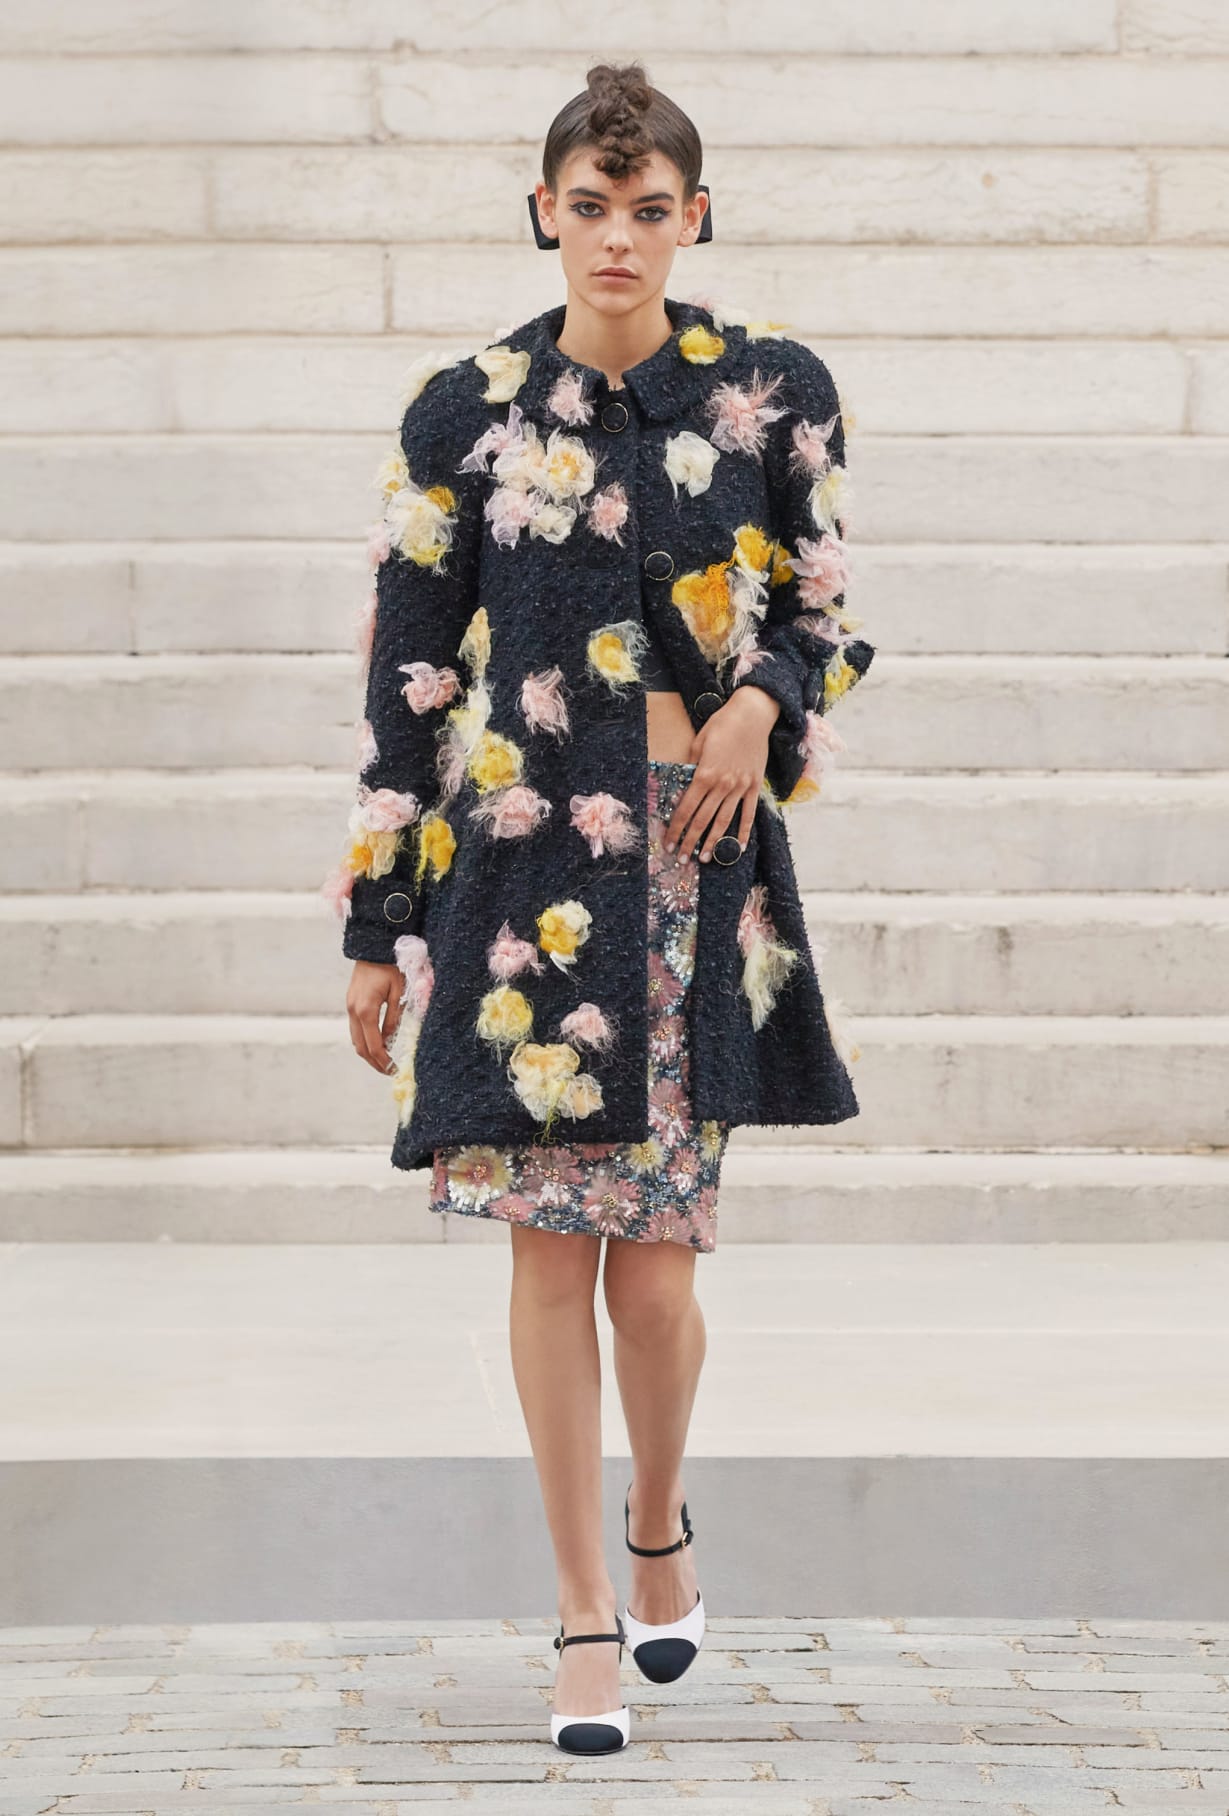 Chanel Haute Couture 2021: Sự tối giản của sàn diễn để tôn vinh trang phục  - Ảnh 5